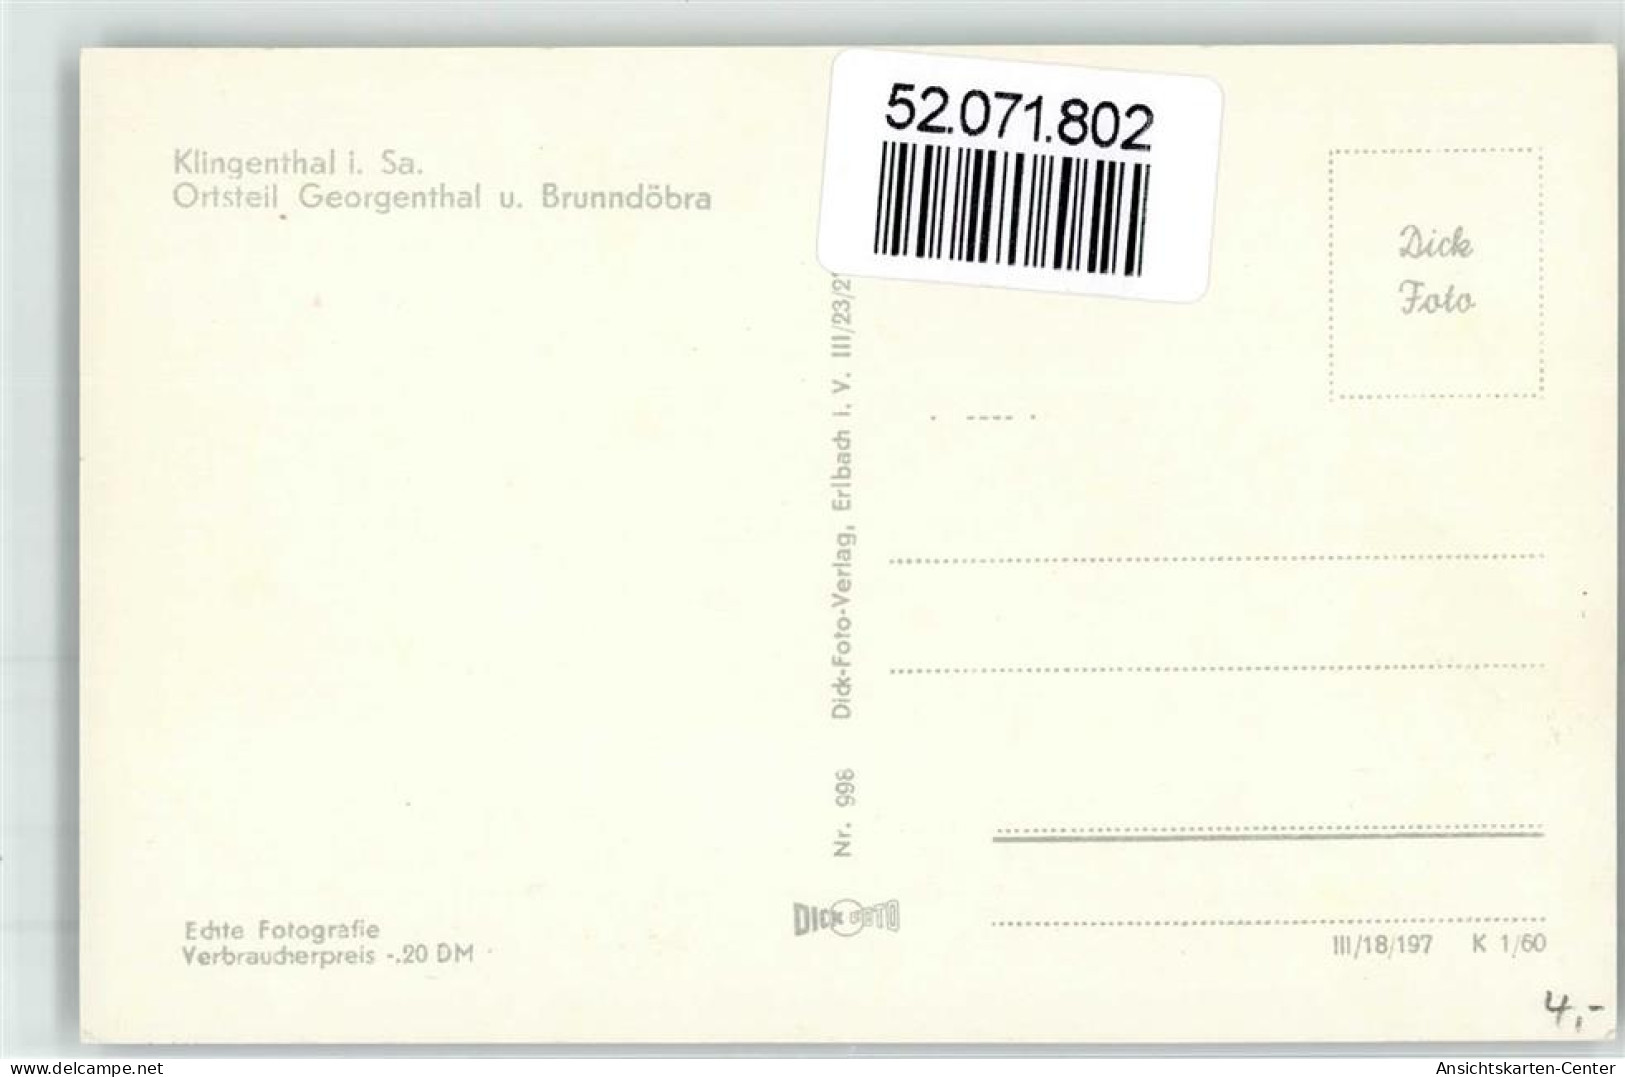 52071802 - Klingenthal - Klingenthal